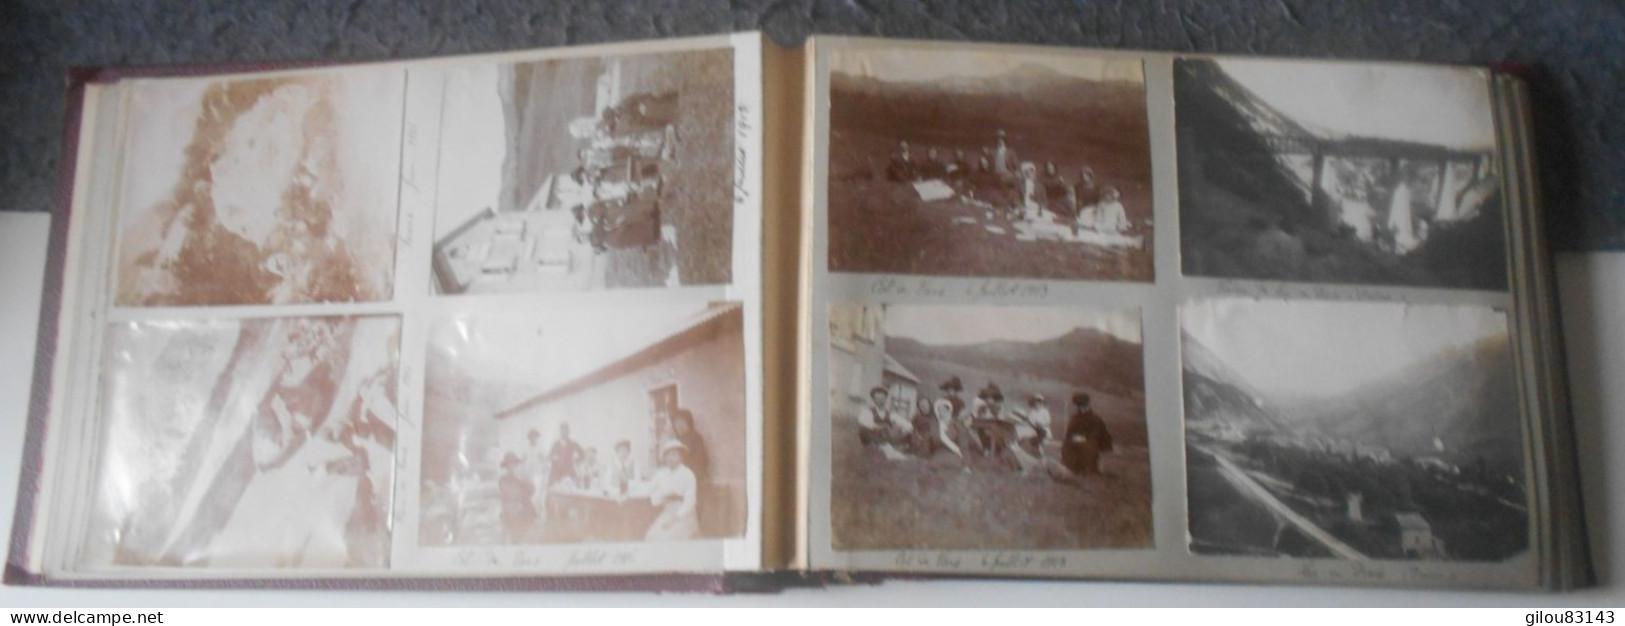 Alpes de Haute Provence, Album de famille de Barcelonnette, militaires, zeppelin, automobiles, villages,145 photos + doc